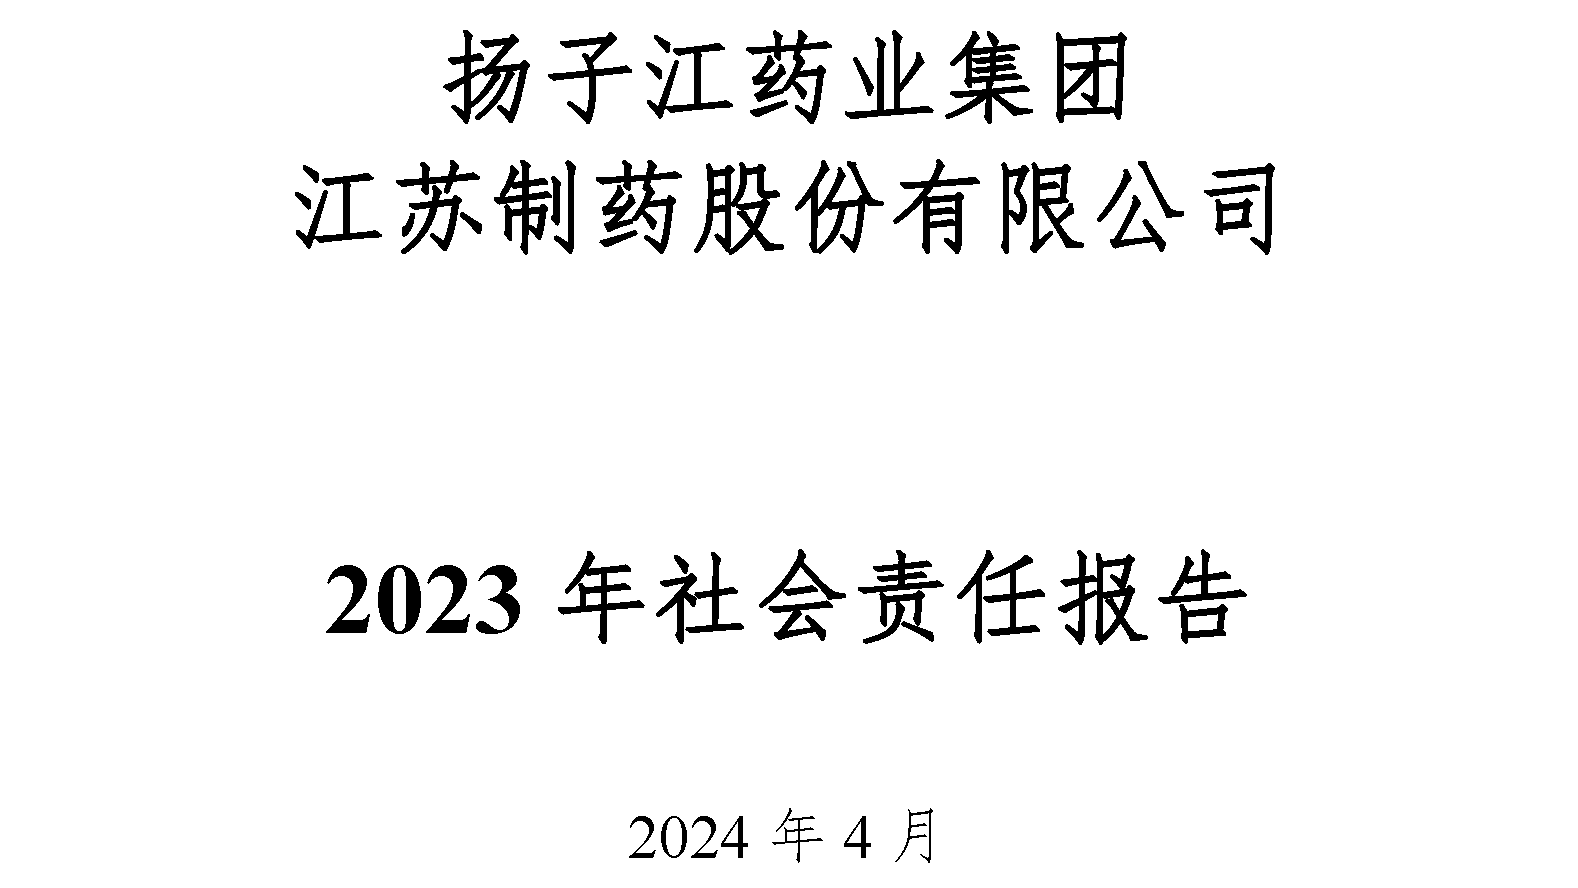 江苏制药股份有限公司2023年社会责任报告